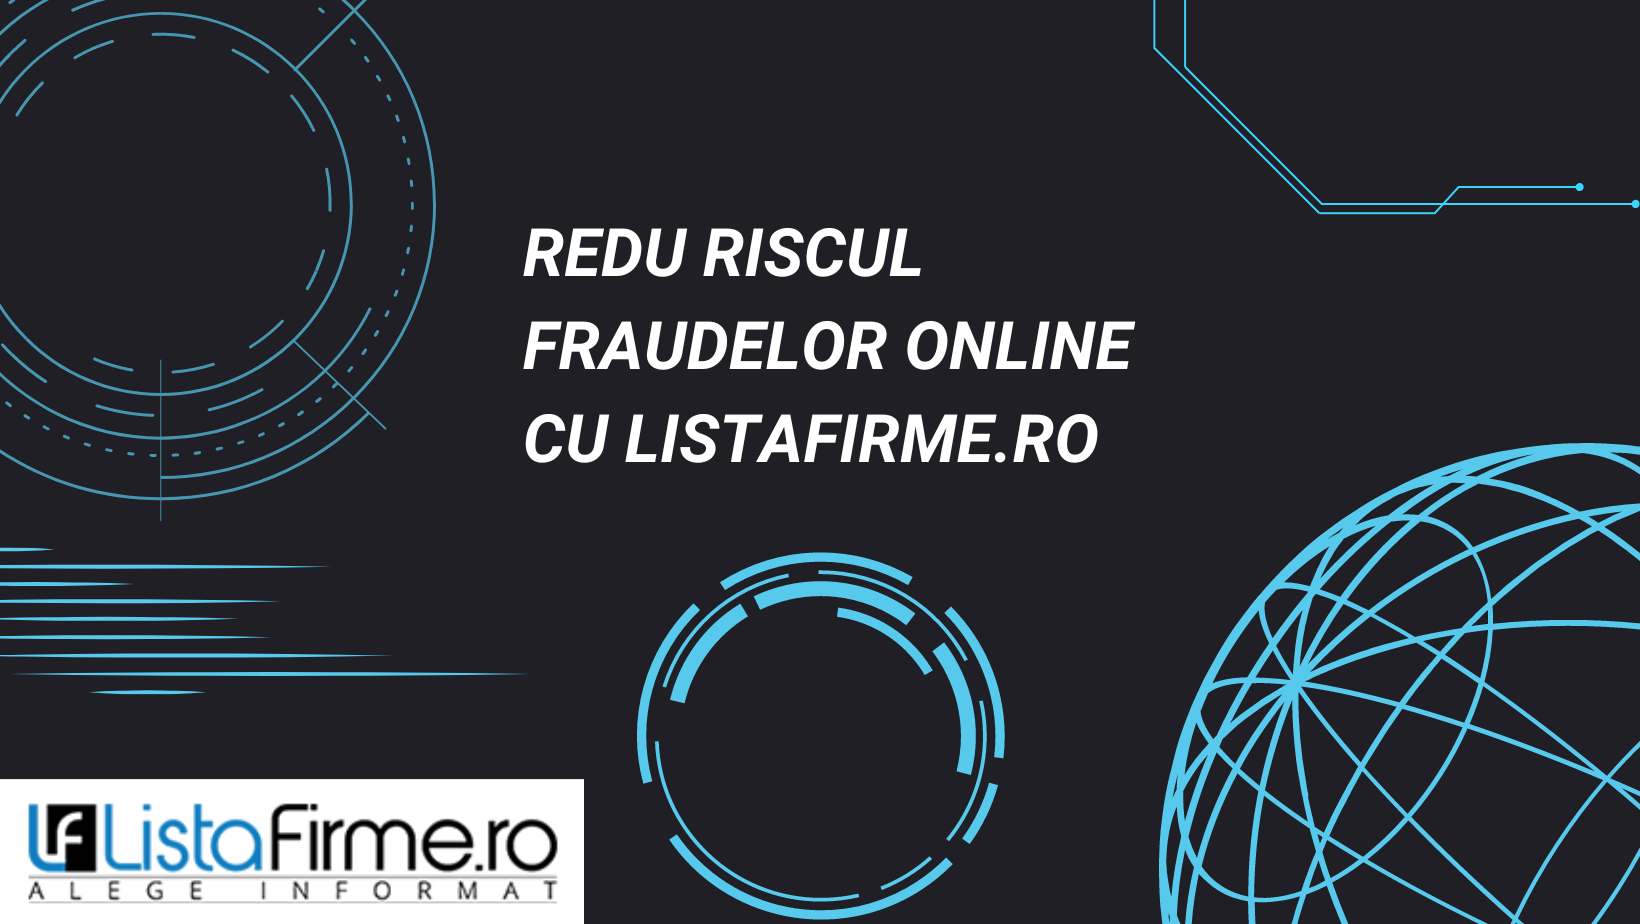 Redu riscul achizițiilor online cu ListaFirme.ro – Revista Antreprenorului